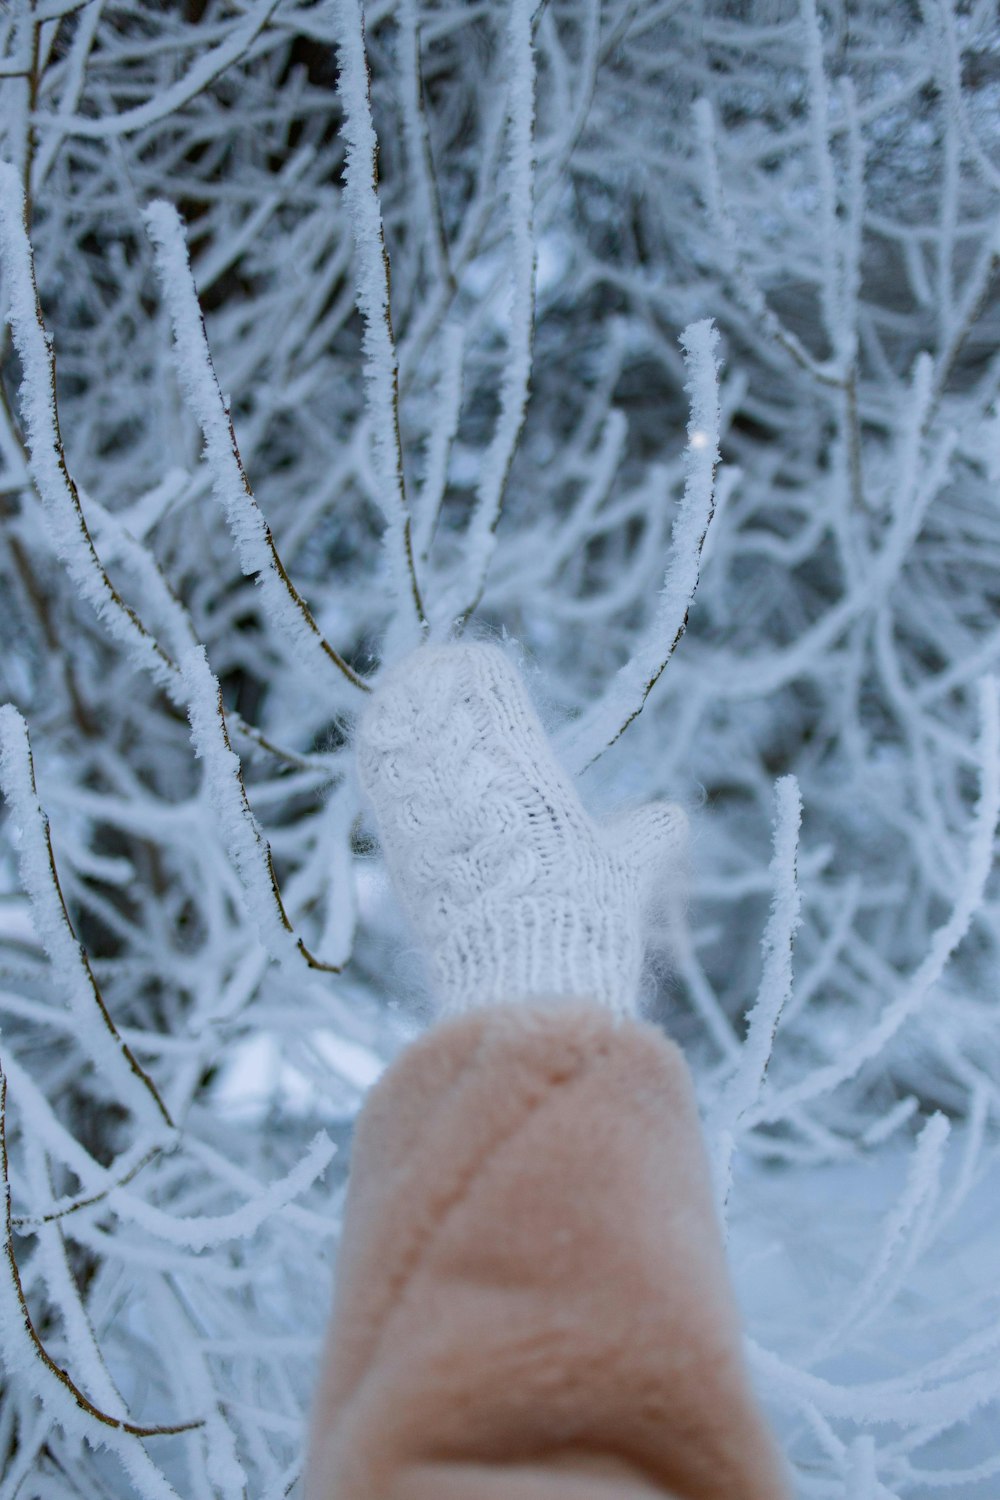 personne en gants en tricot rose recouverts de neige